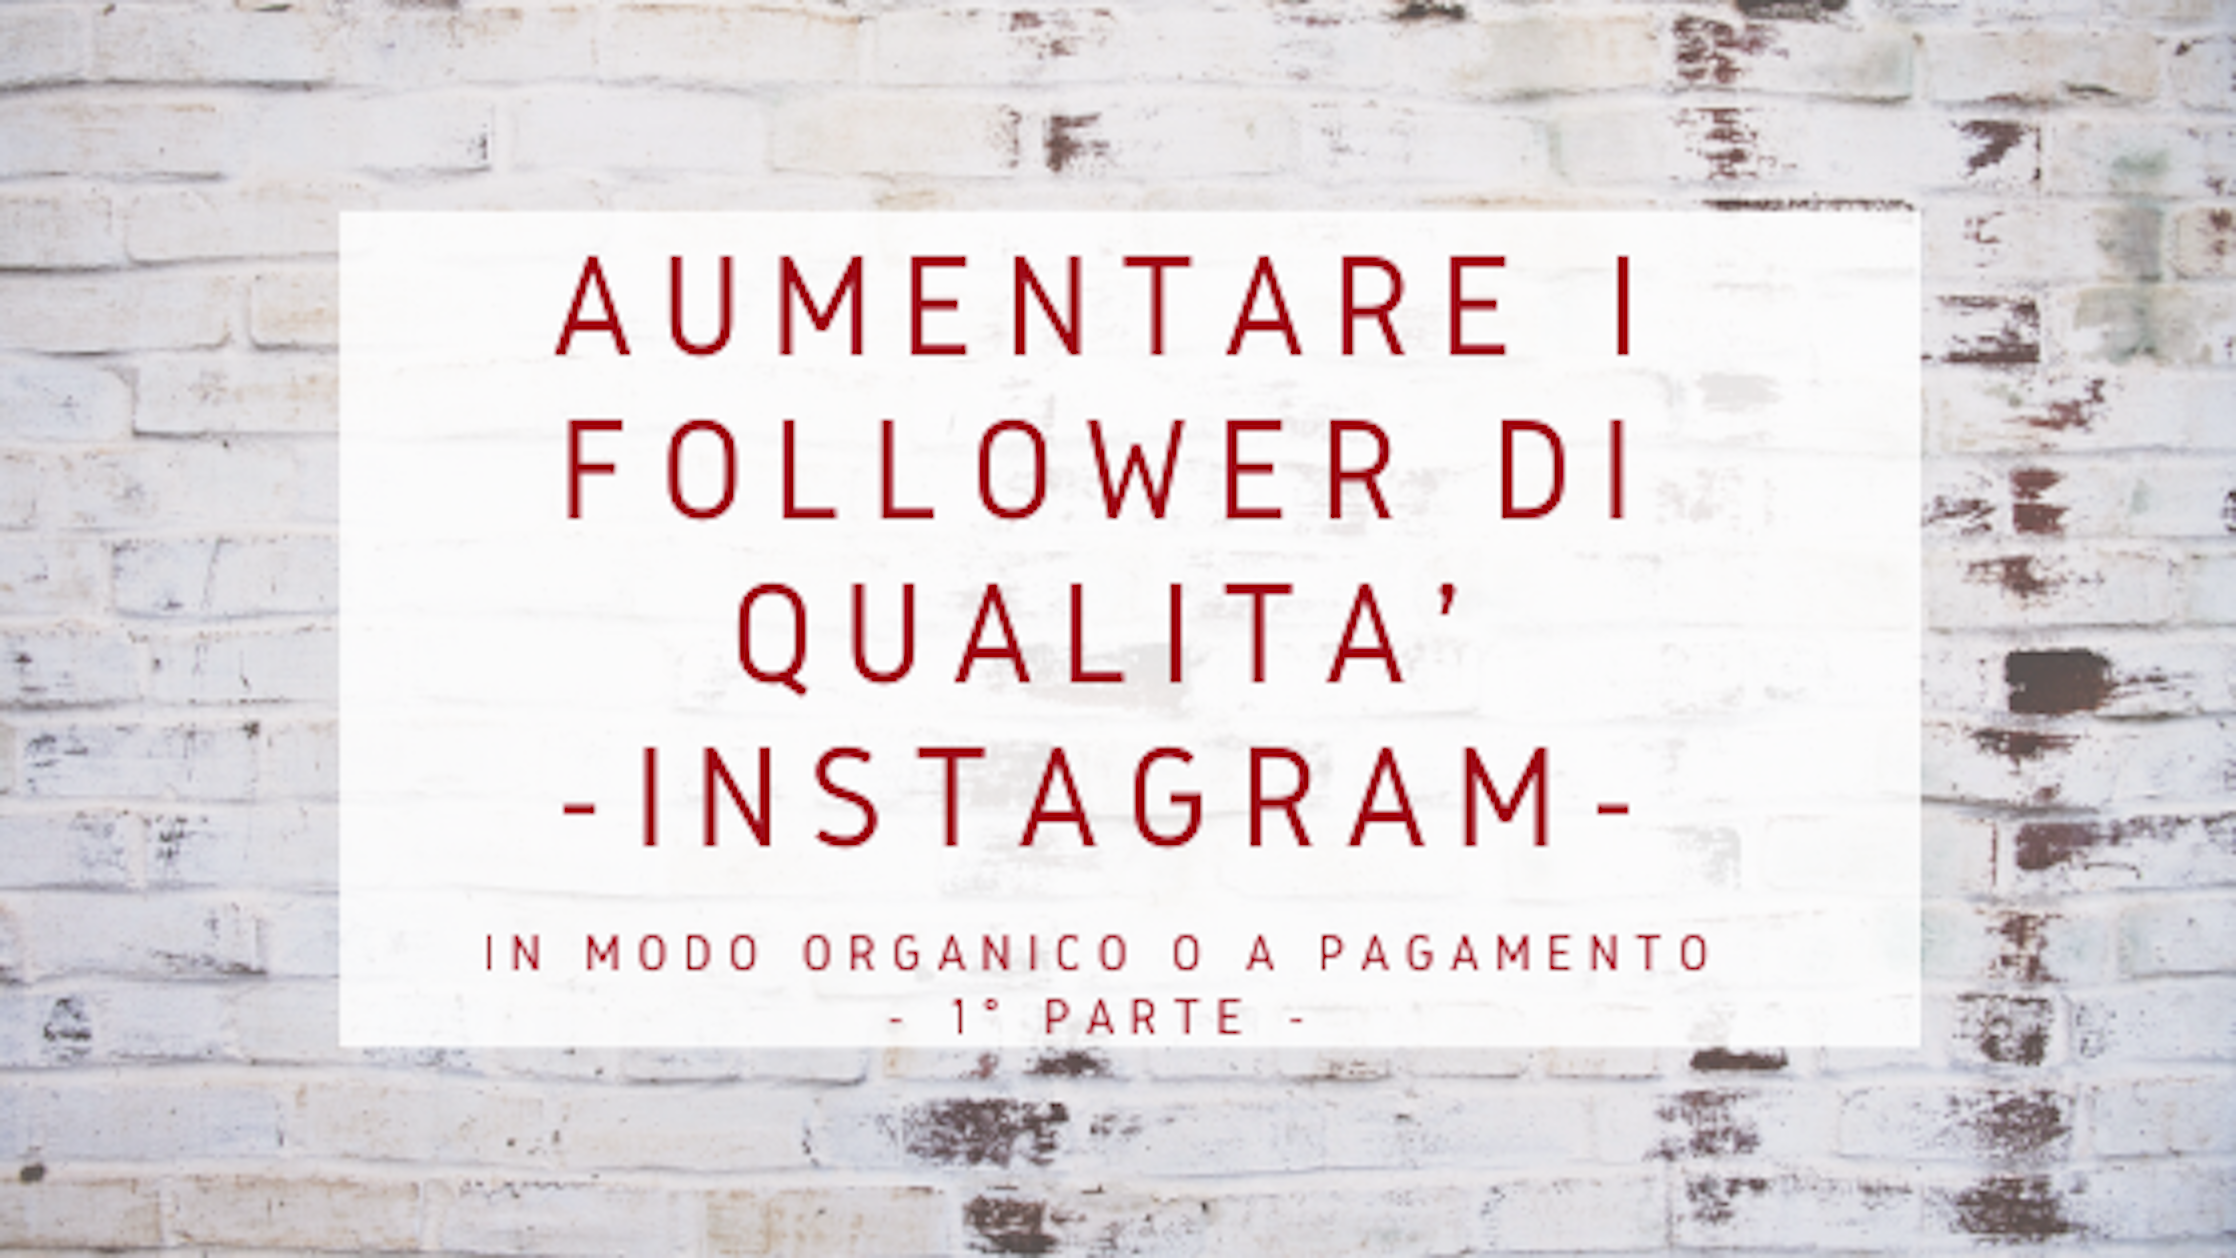 Instagram: Follower di qualità come acquisirli